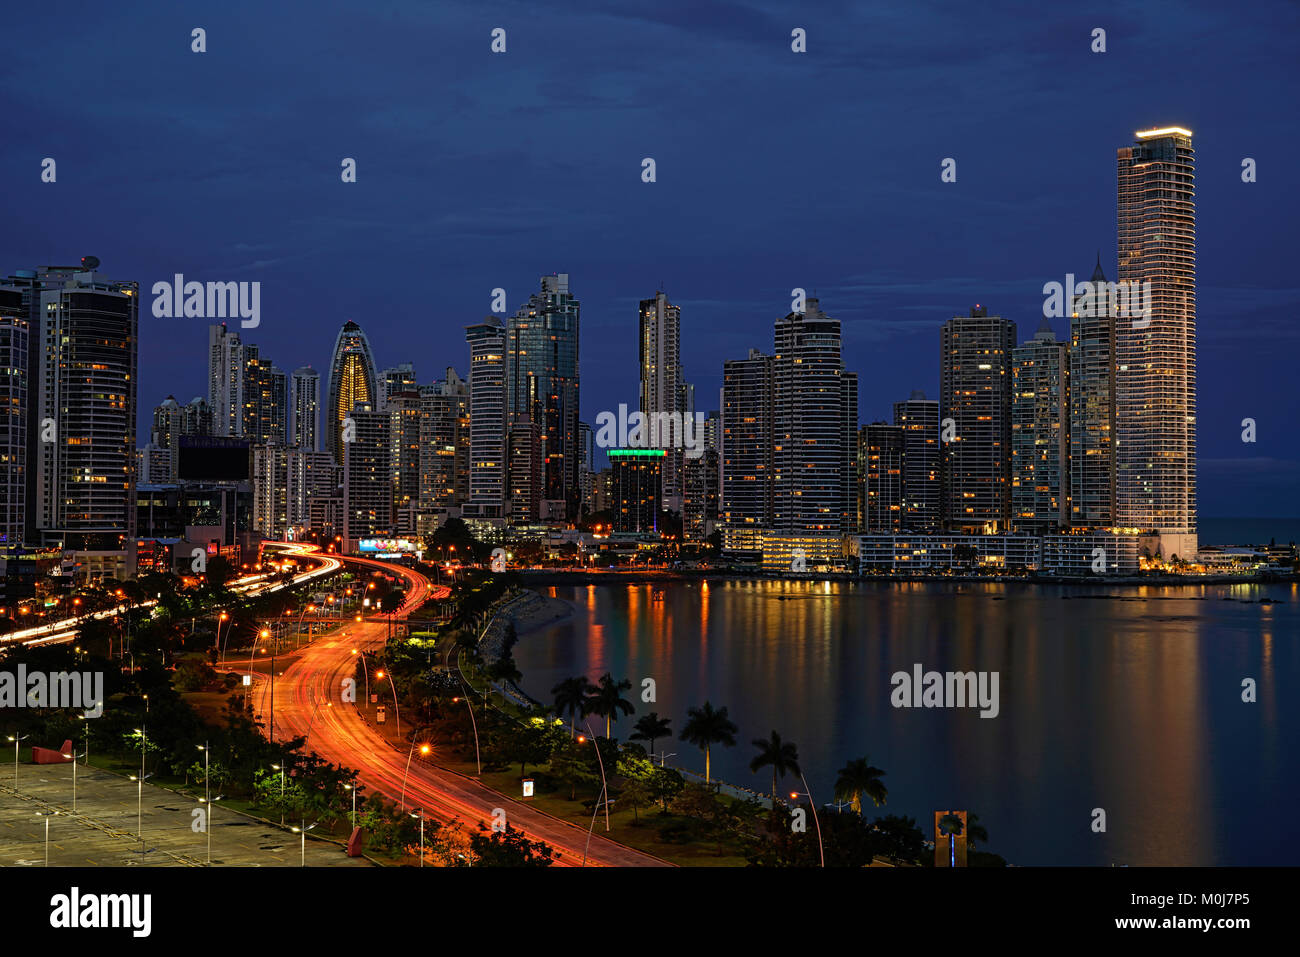 Panama City skyline de Balboa Avenue, la ligne de côte (Cinta Costera). Punta Paitilla, Punta Pacifica en face de la baie de Panama à l'océan pacifique. Banque D'Images